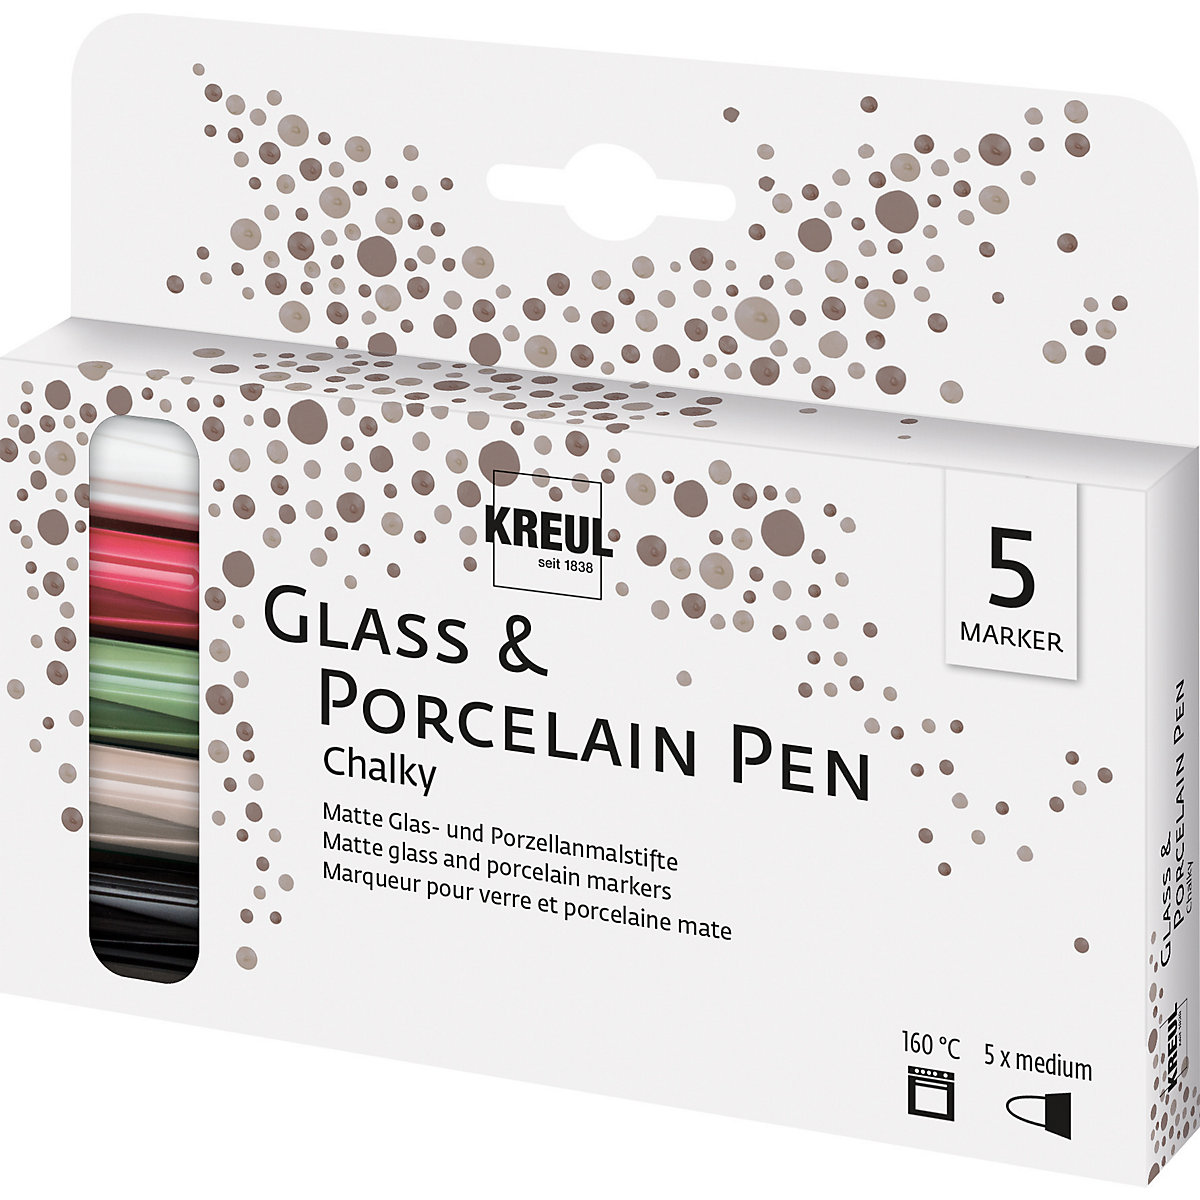 KREUL Glass & Porcelain Pen Chalky medium 5er Set